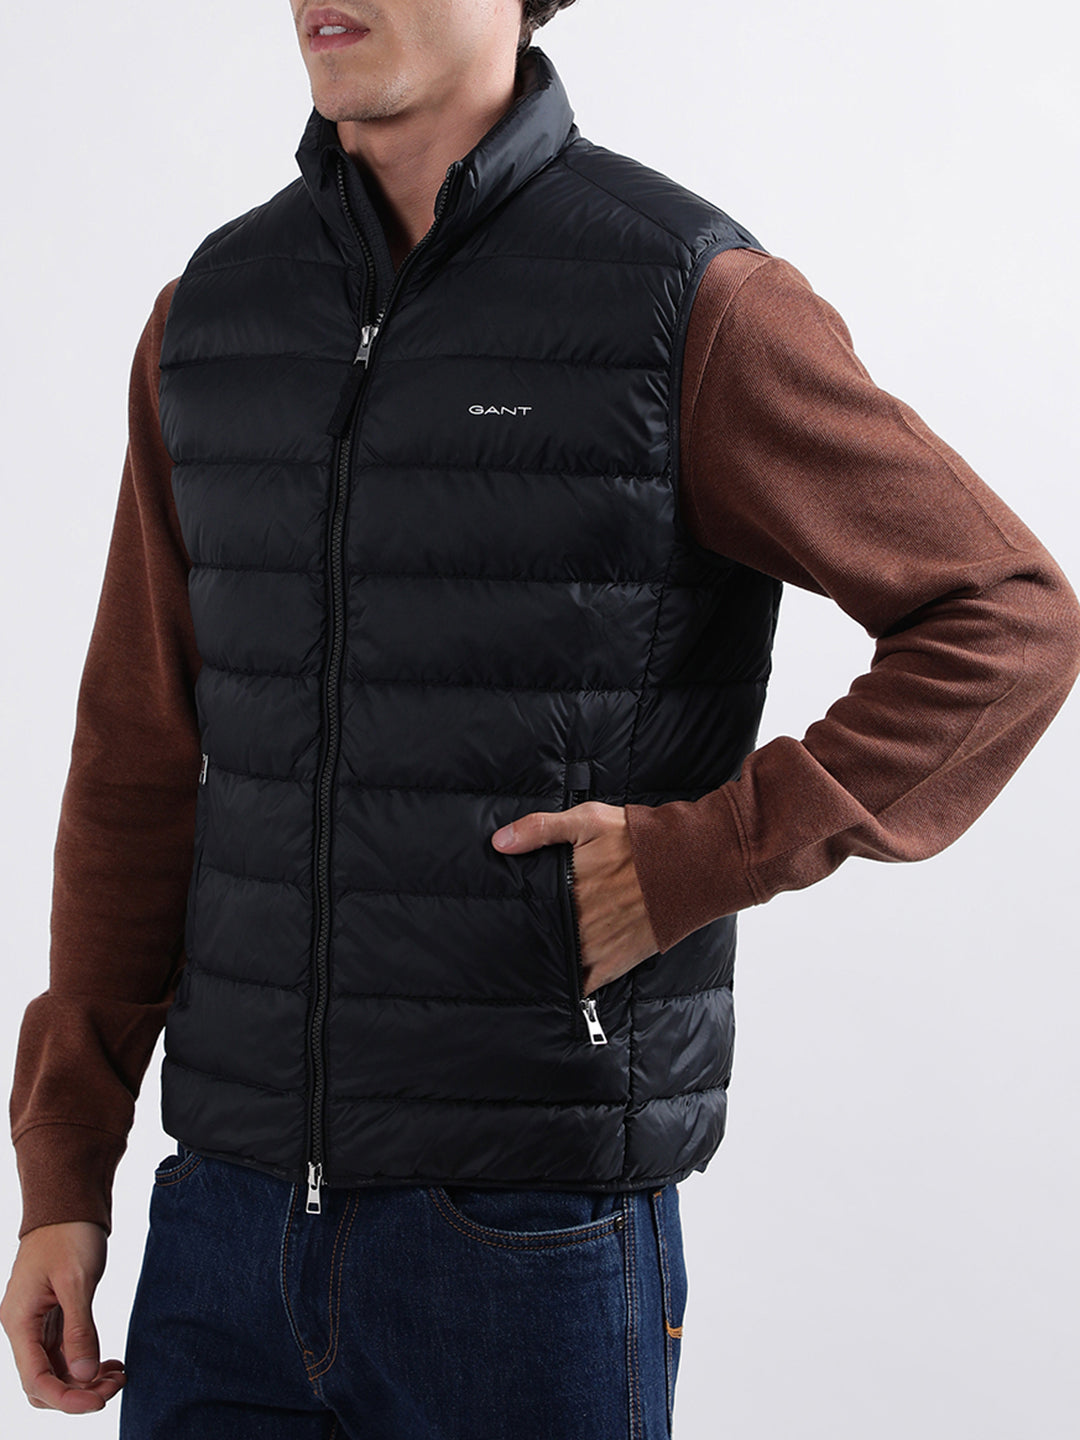 Half Sleeve Stylish Jacket at Rs 310/piece | Long Sleeve Jacket in Delhi |  ID: 19857844773